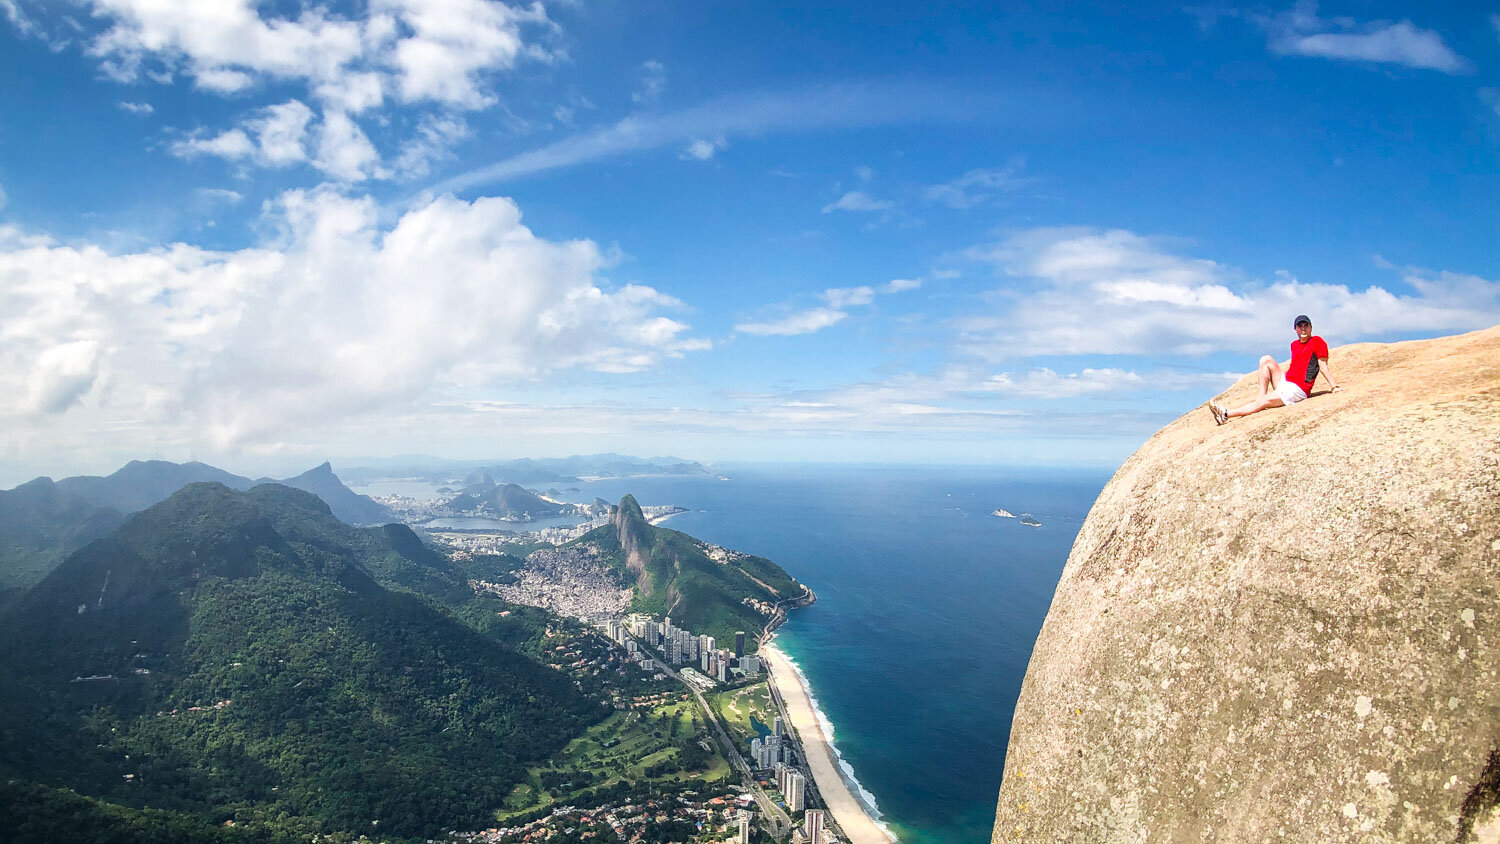 The best list of trails in Rio de Janeiro : Pedra da Gávea Trail - Carrasqueira - Rio de Janeiro: Carrasqueira Trail - Pedra da Gávea